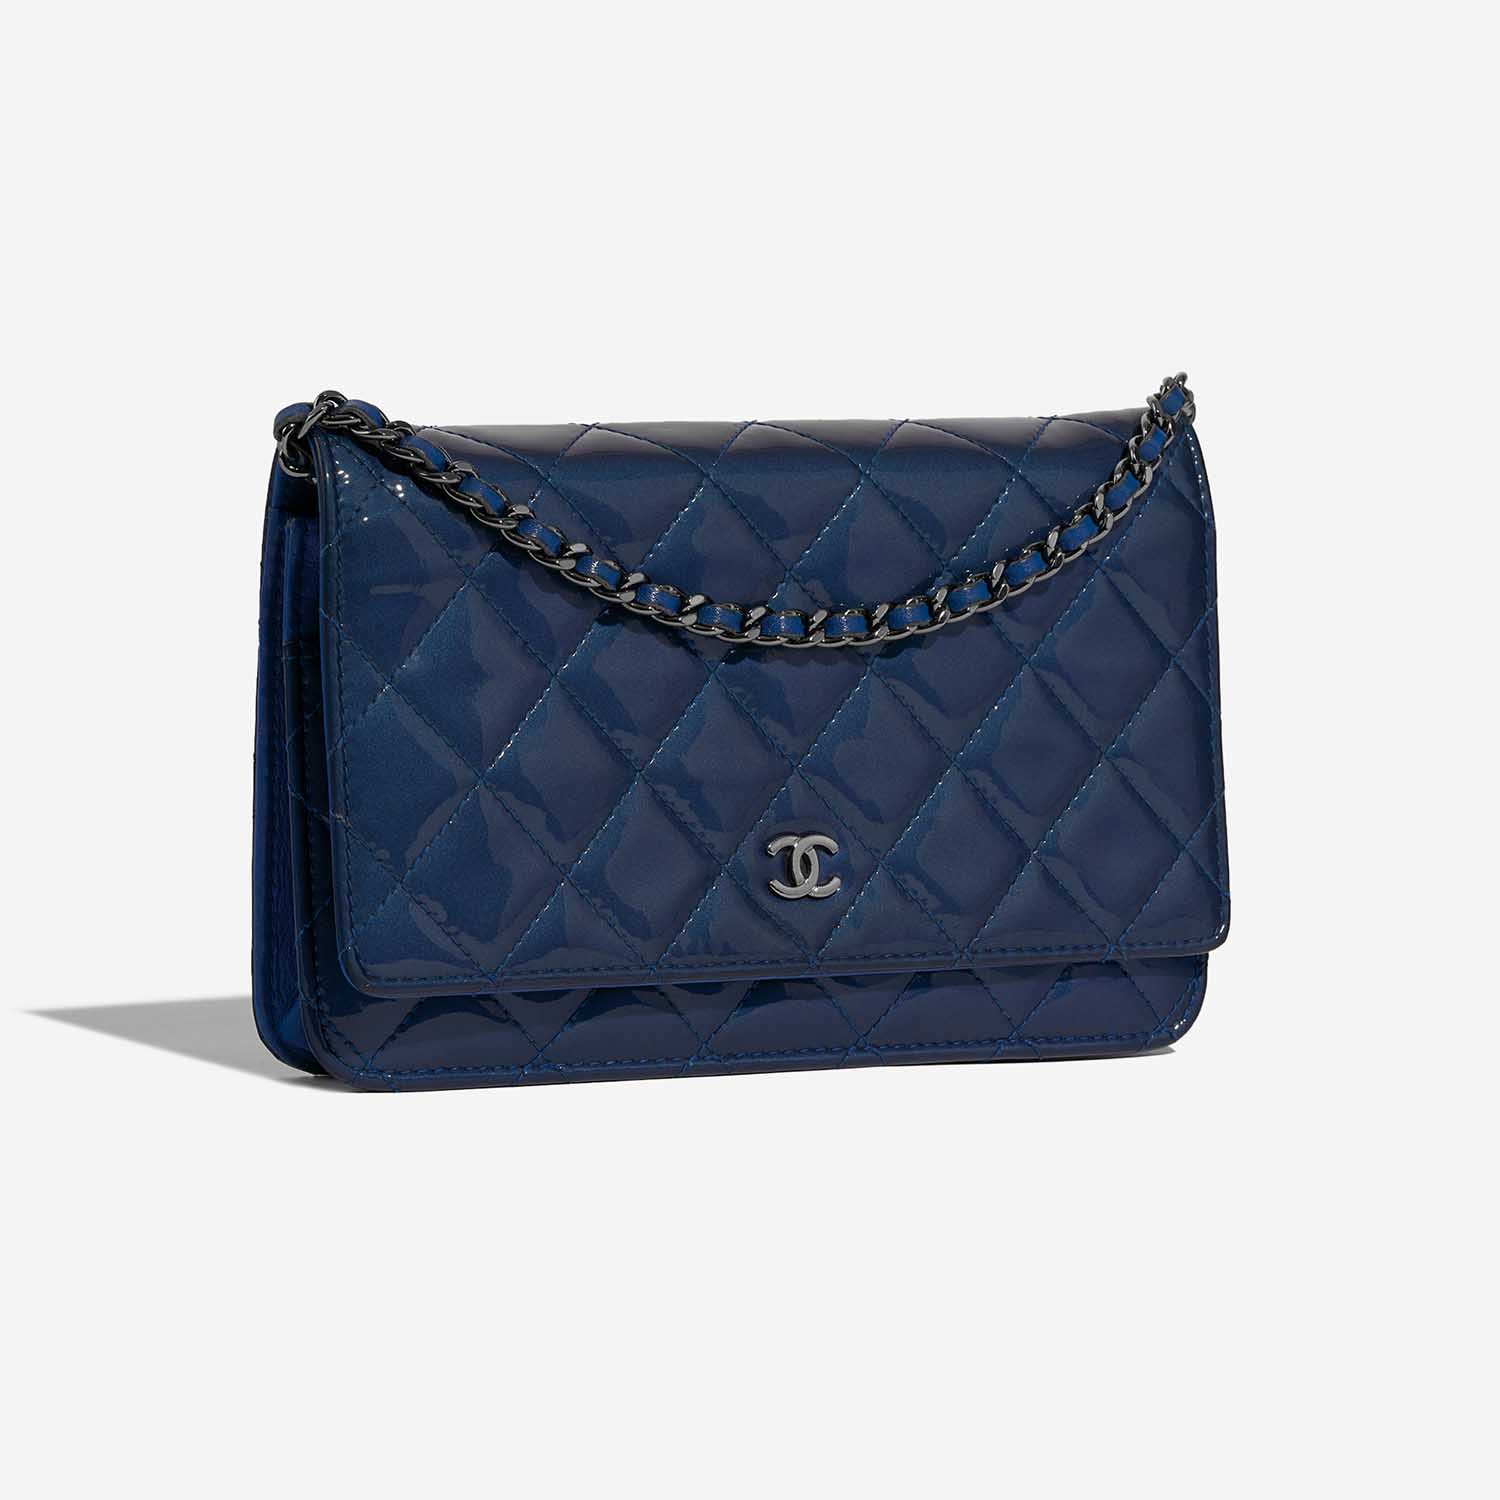 Chanel Timeless WOC Blau 6SF S | Verkaufen Sie Ihre Designer-Tasche auf Saclab.com